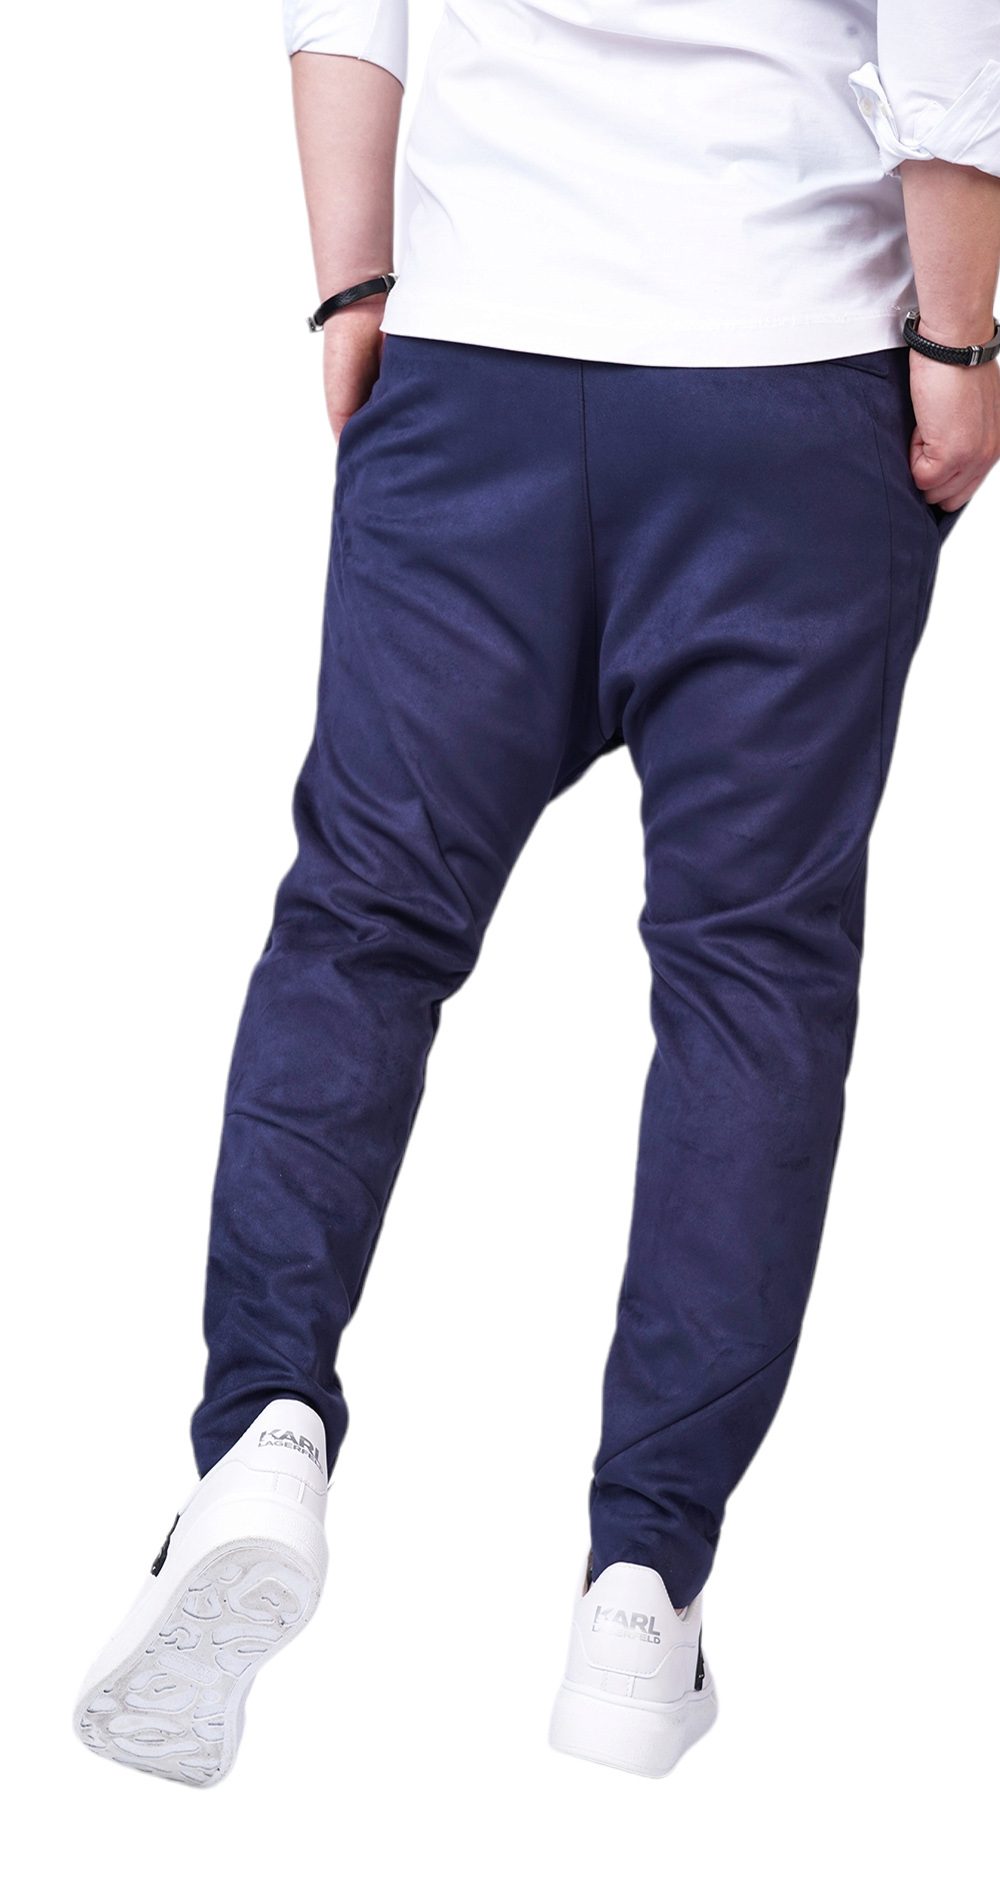 Pantaloni cu semi-tur, din <b>piele intoarsa</b> eco-friendly MPL6101